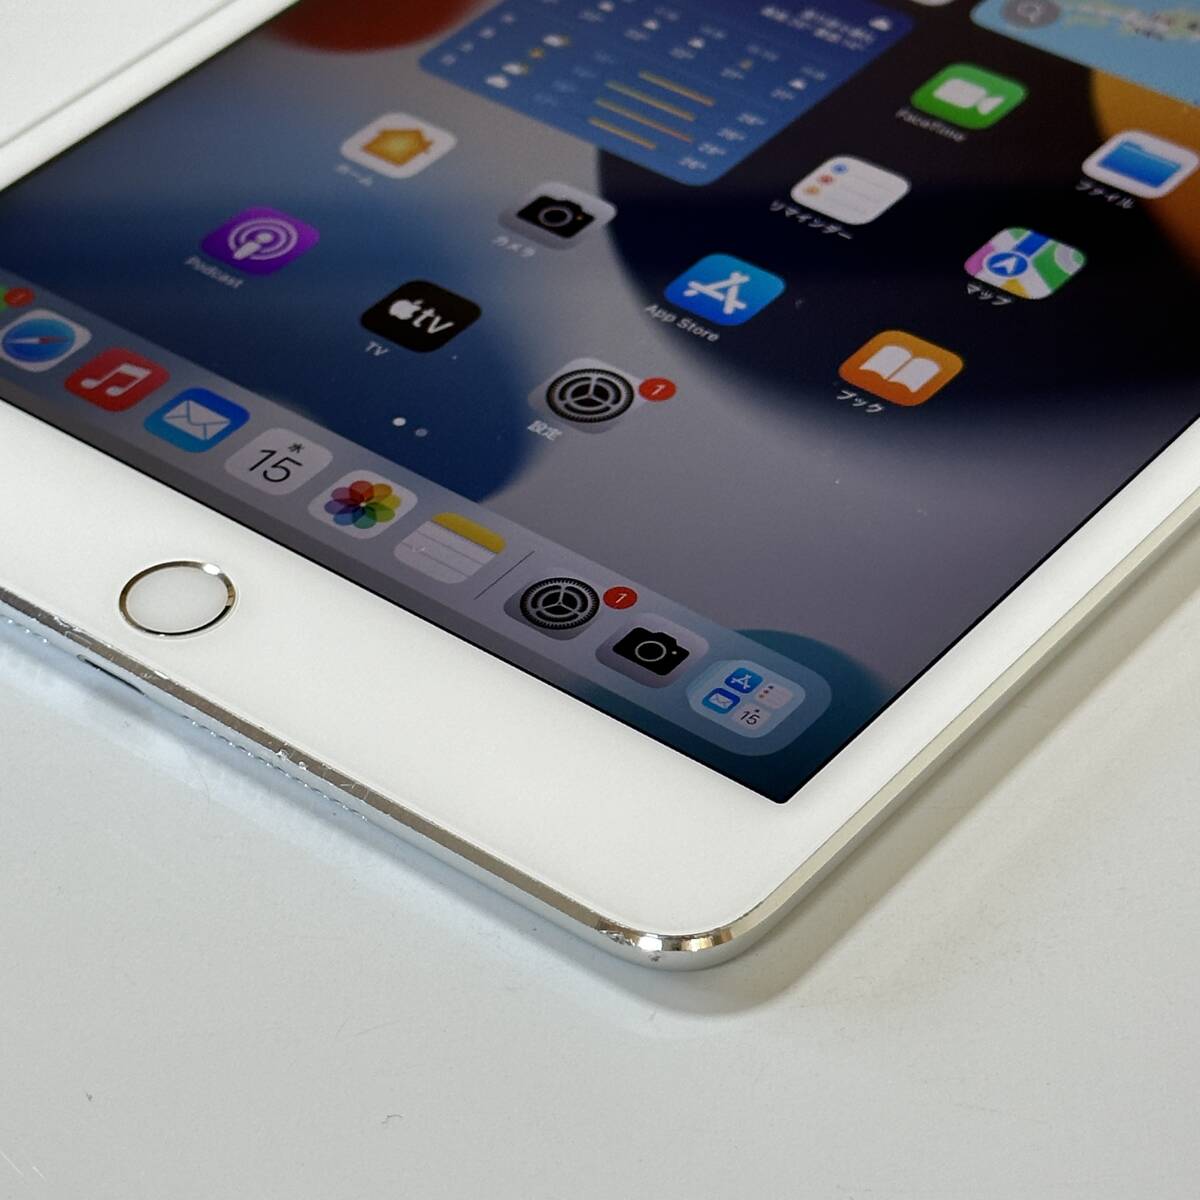 Apple iPad mini 4 серебряный 16GB MK6K2J/A Wi-Fi модель iOS15.8.2 Acty беж .n разблокирован 